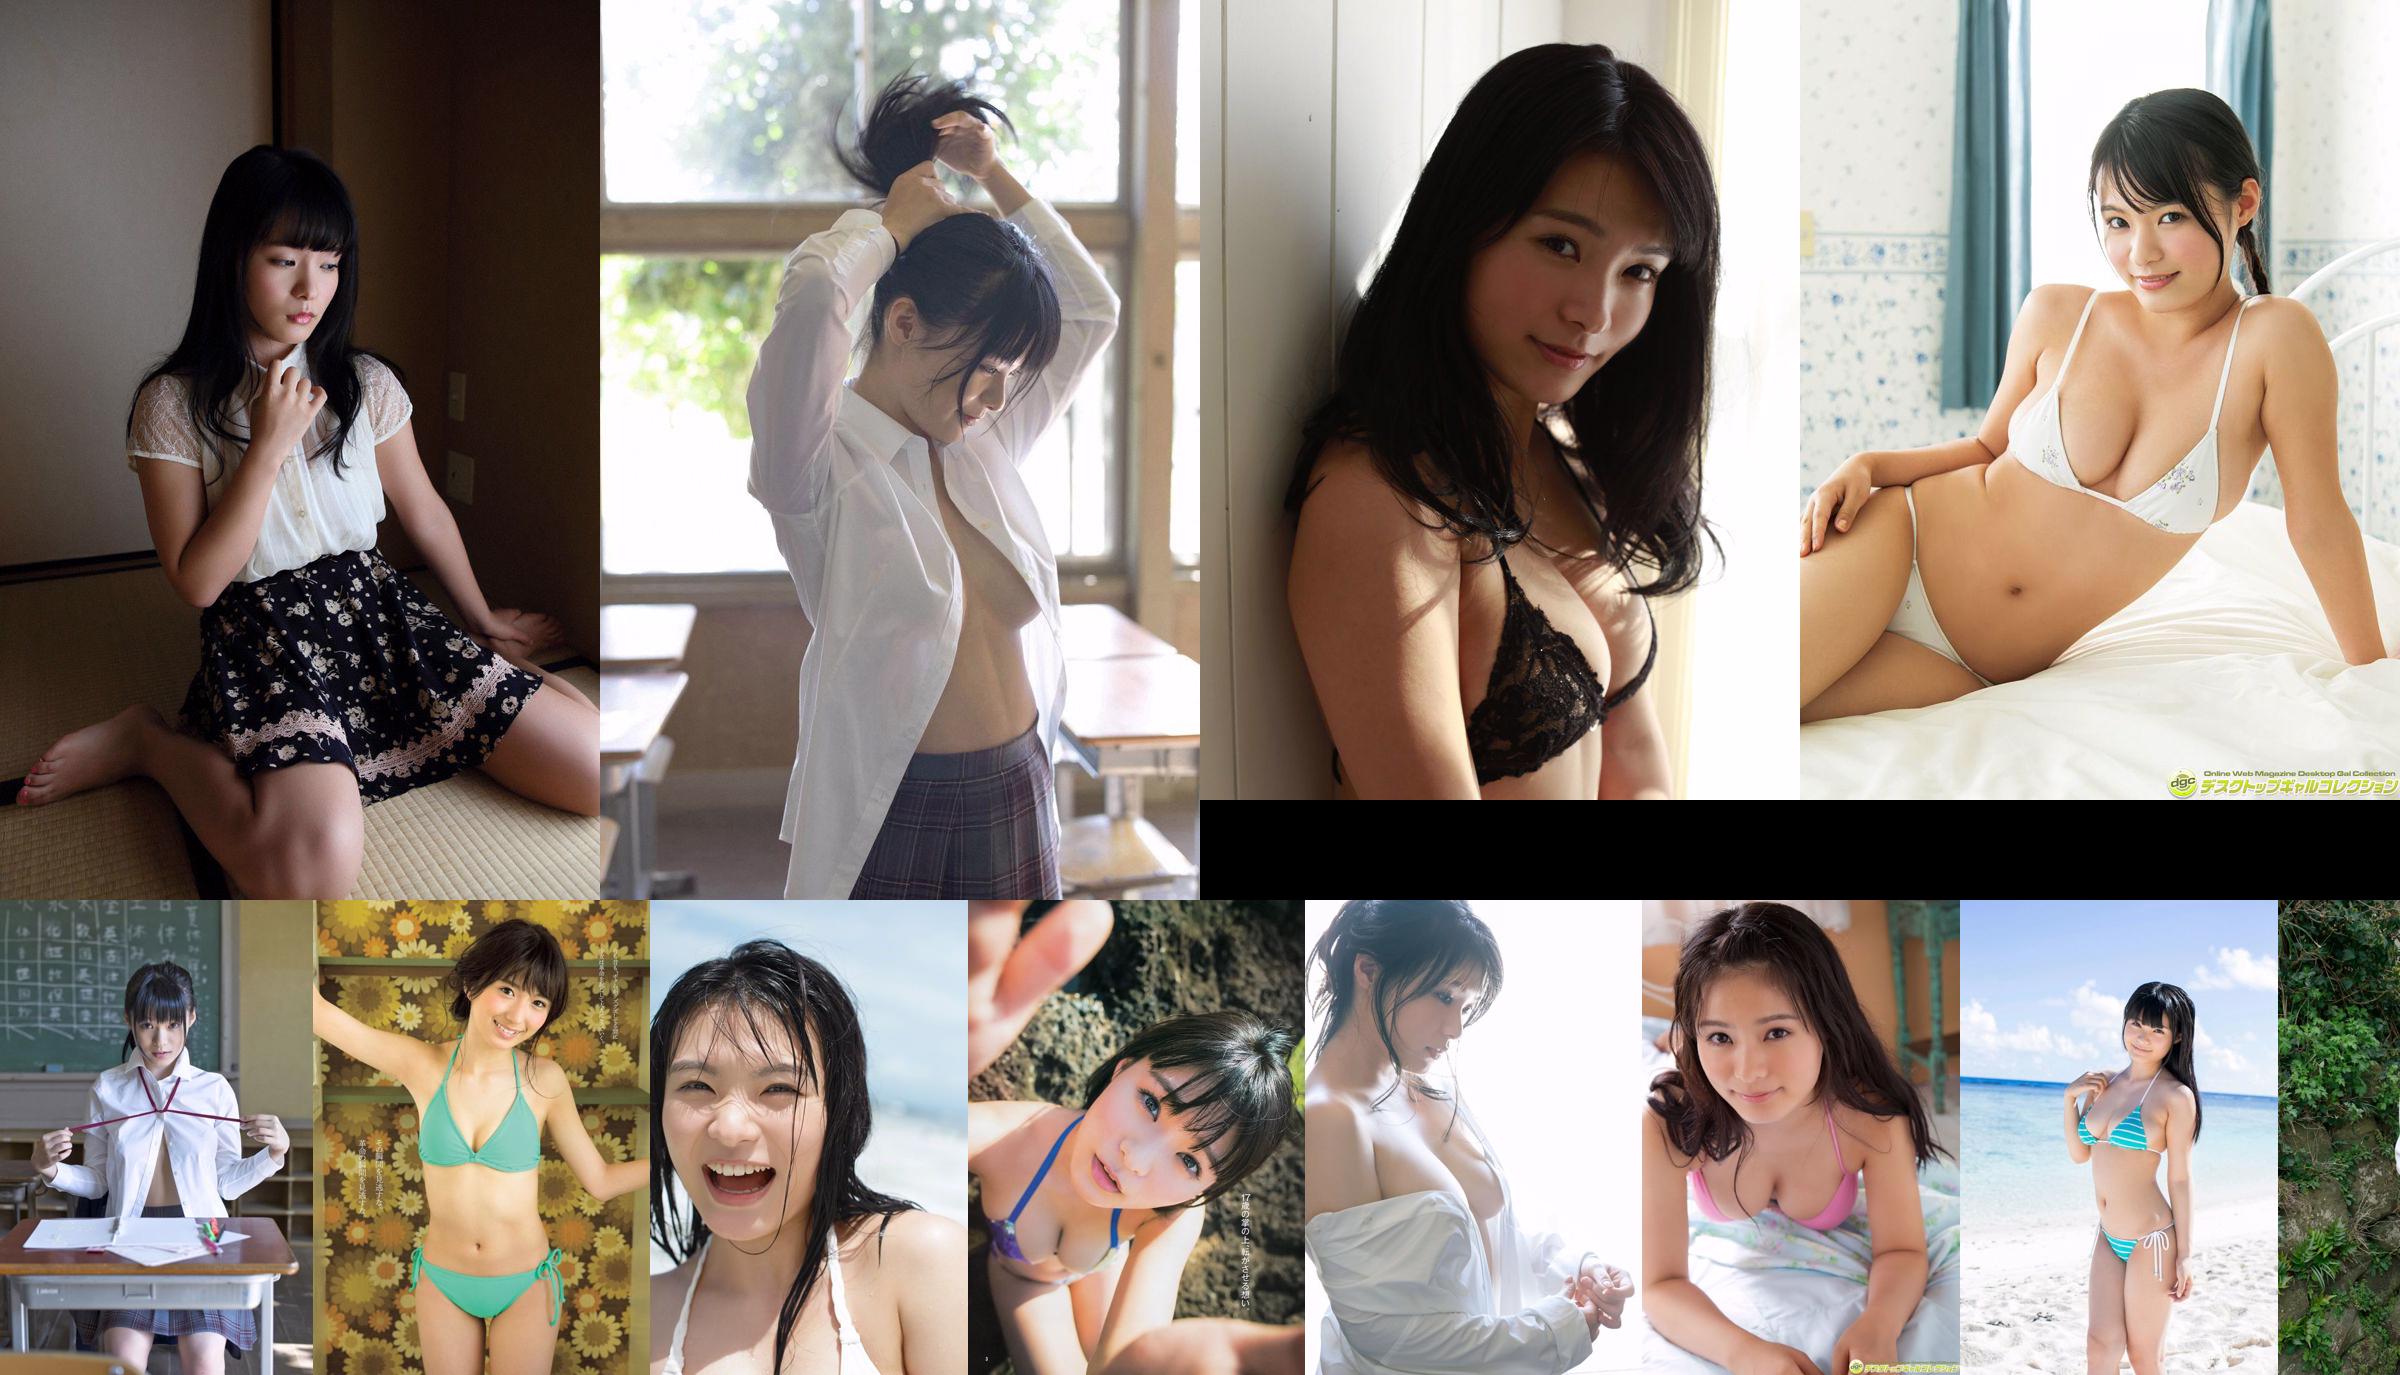 [Bomb.TV] Edisi April 2013 Hoshina Mizuki Hoshina Mizuki No.c3c1c1 Halaman 1